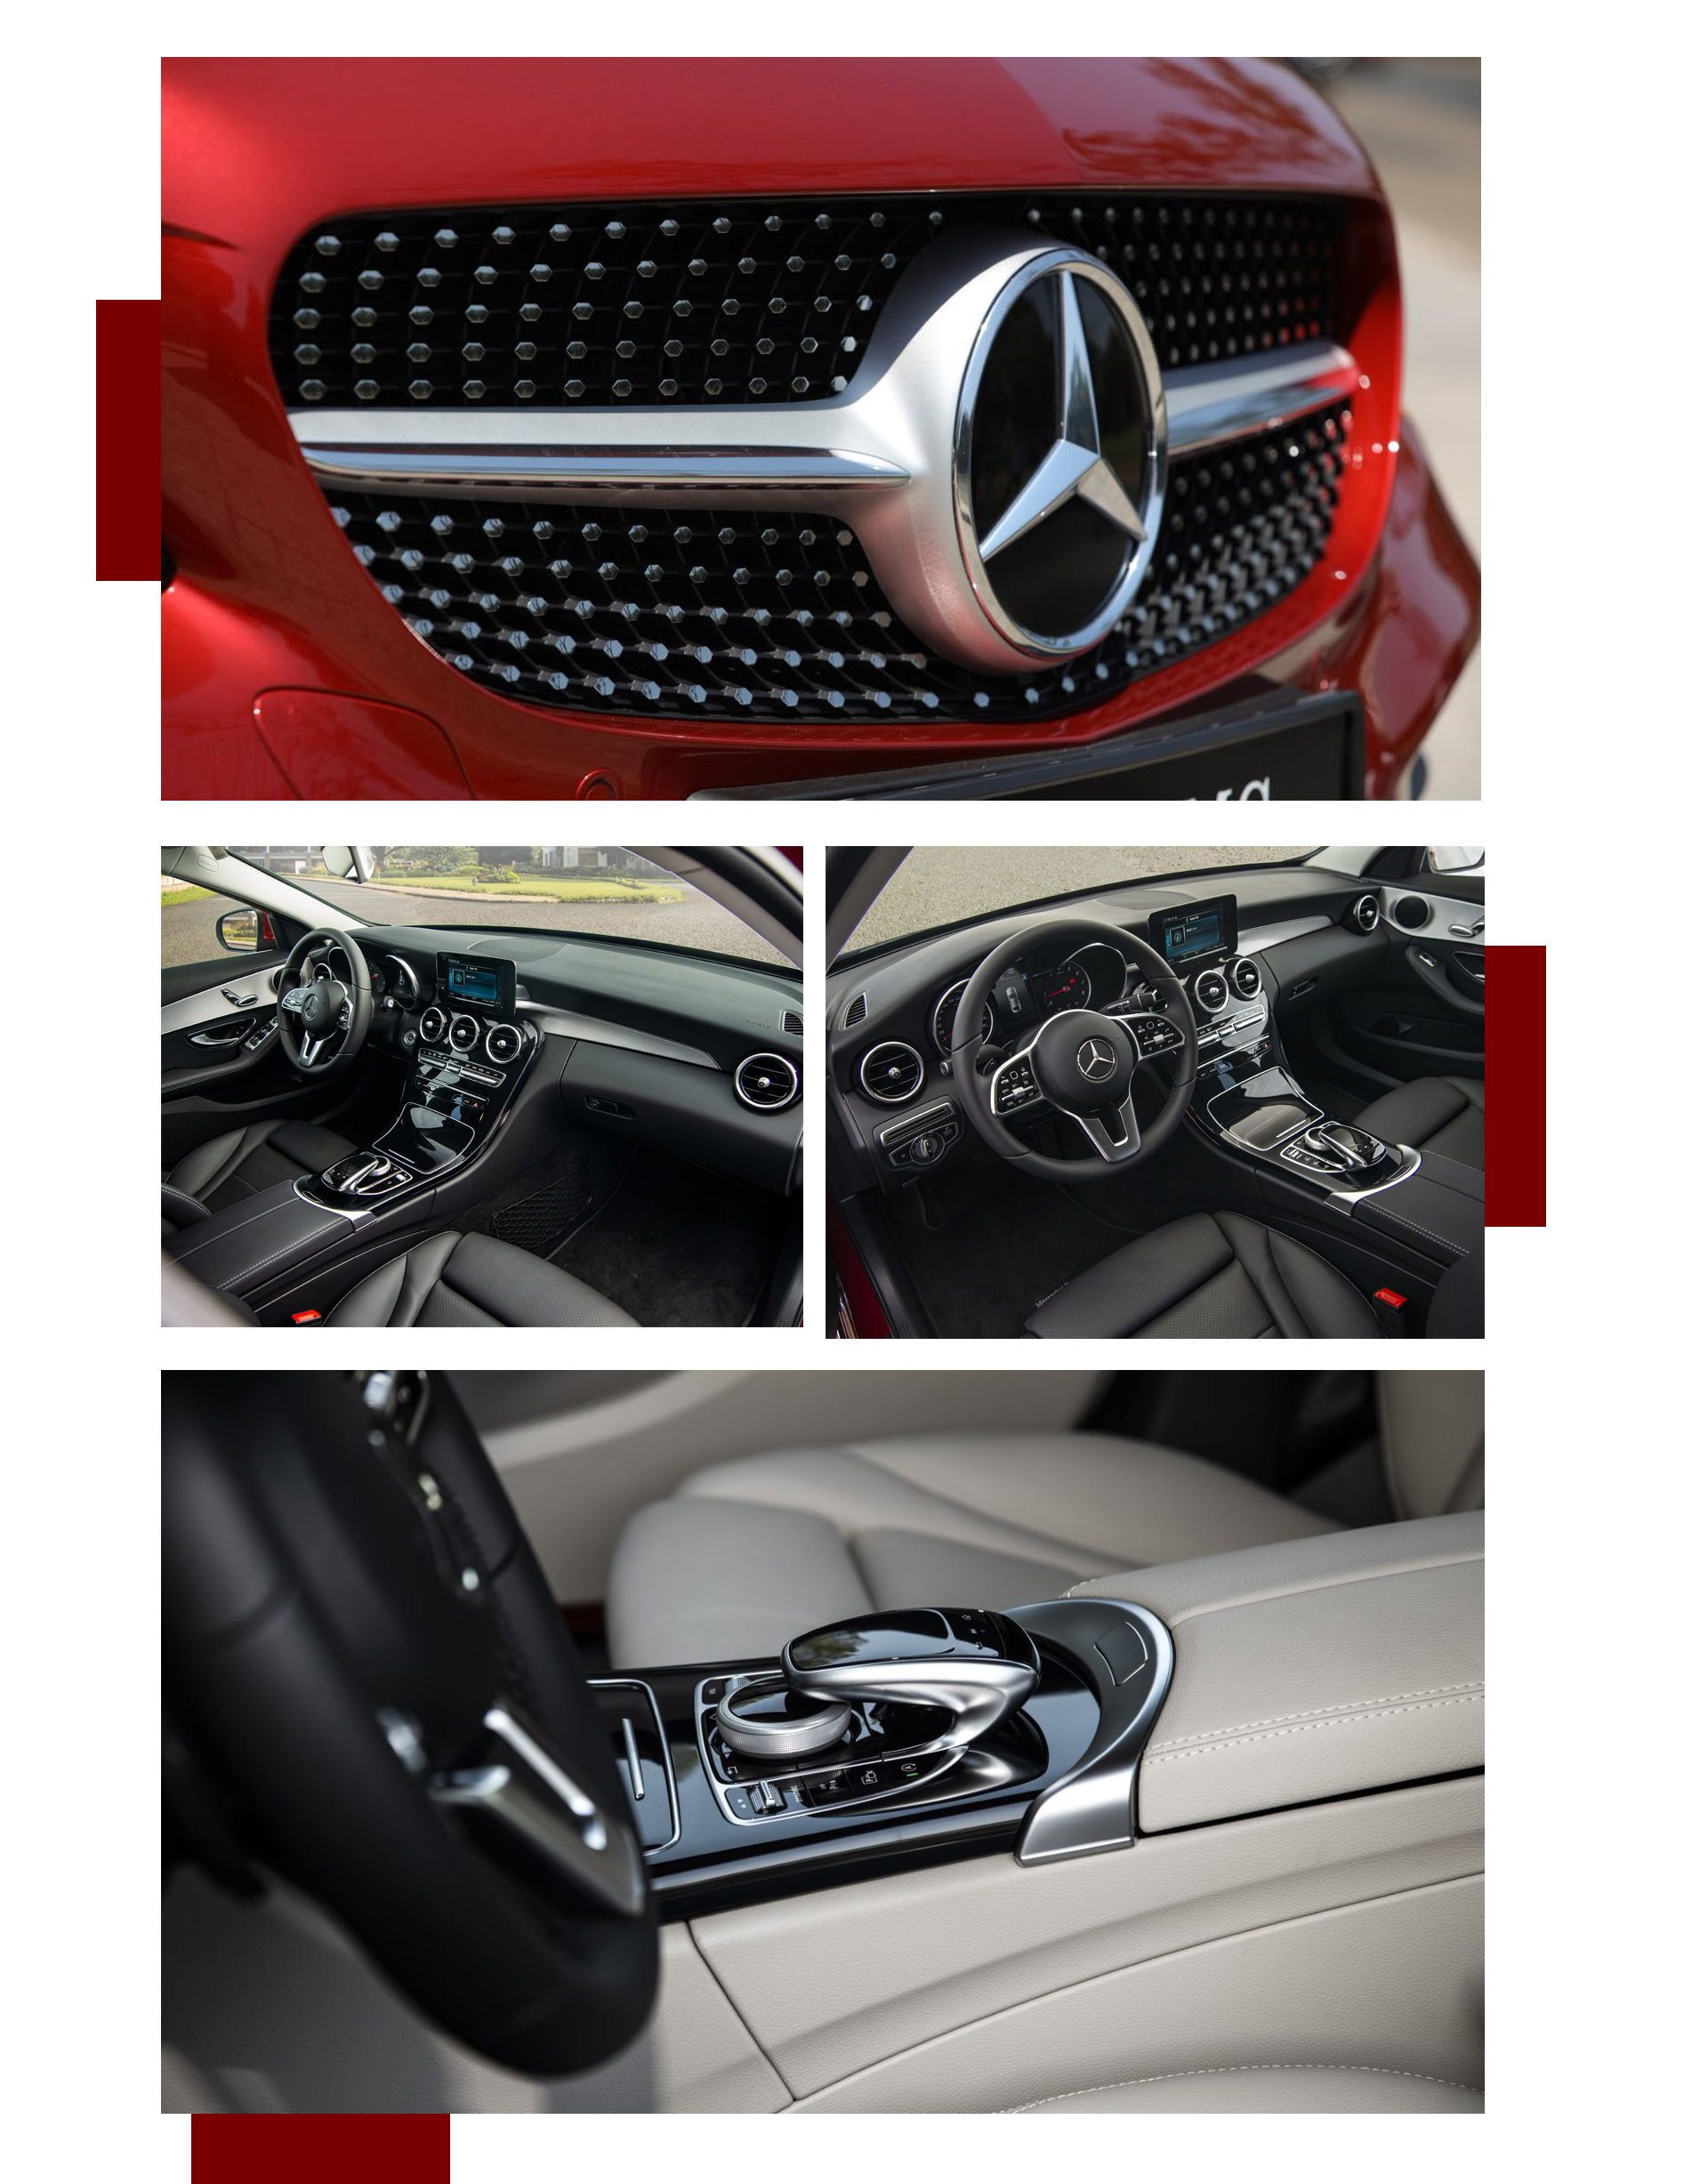 Cơ hội trúng Mercedes-Benz khi mua xe tại showroom của Vietnam Star trên toàn quốc - 3